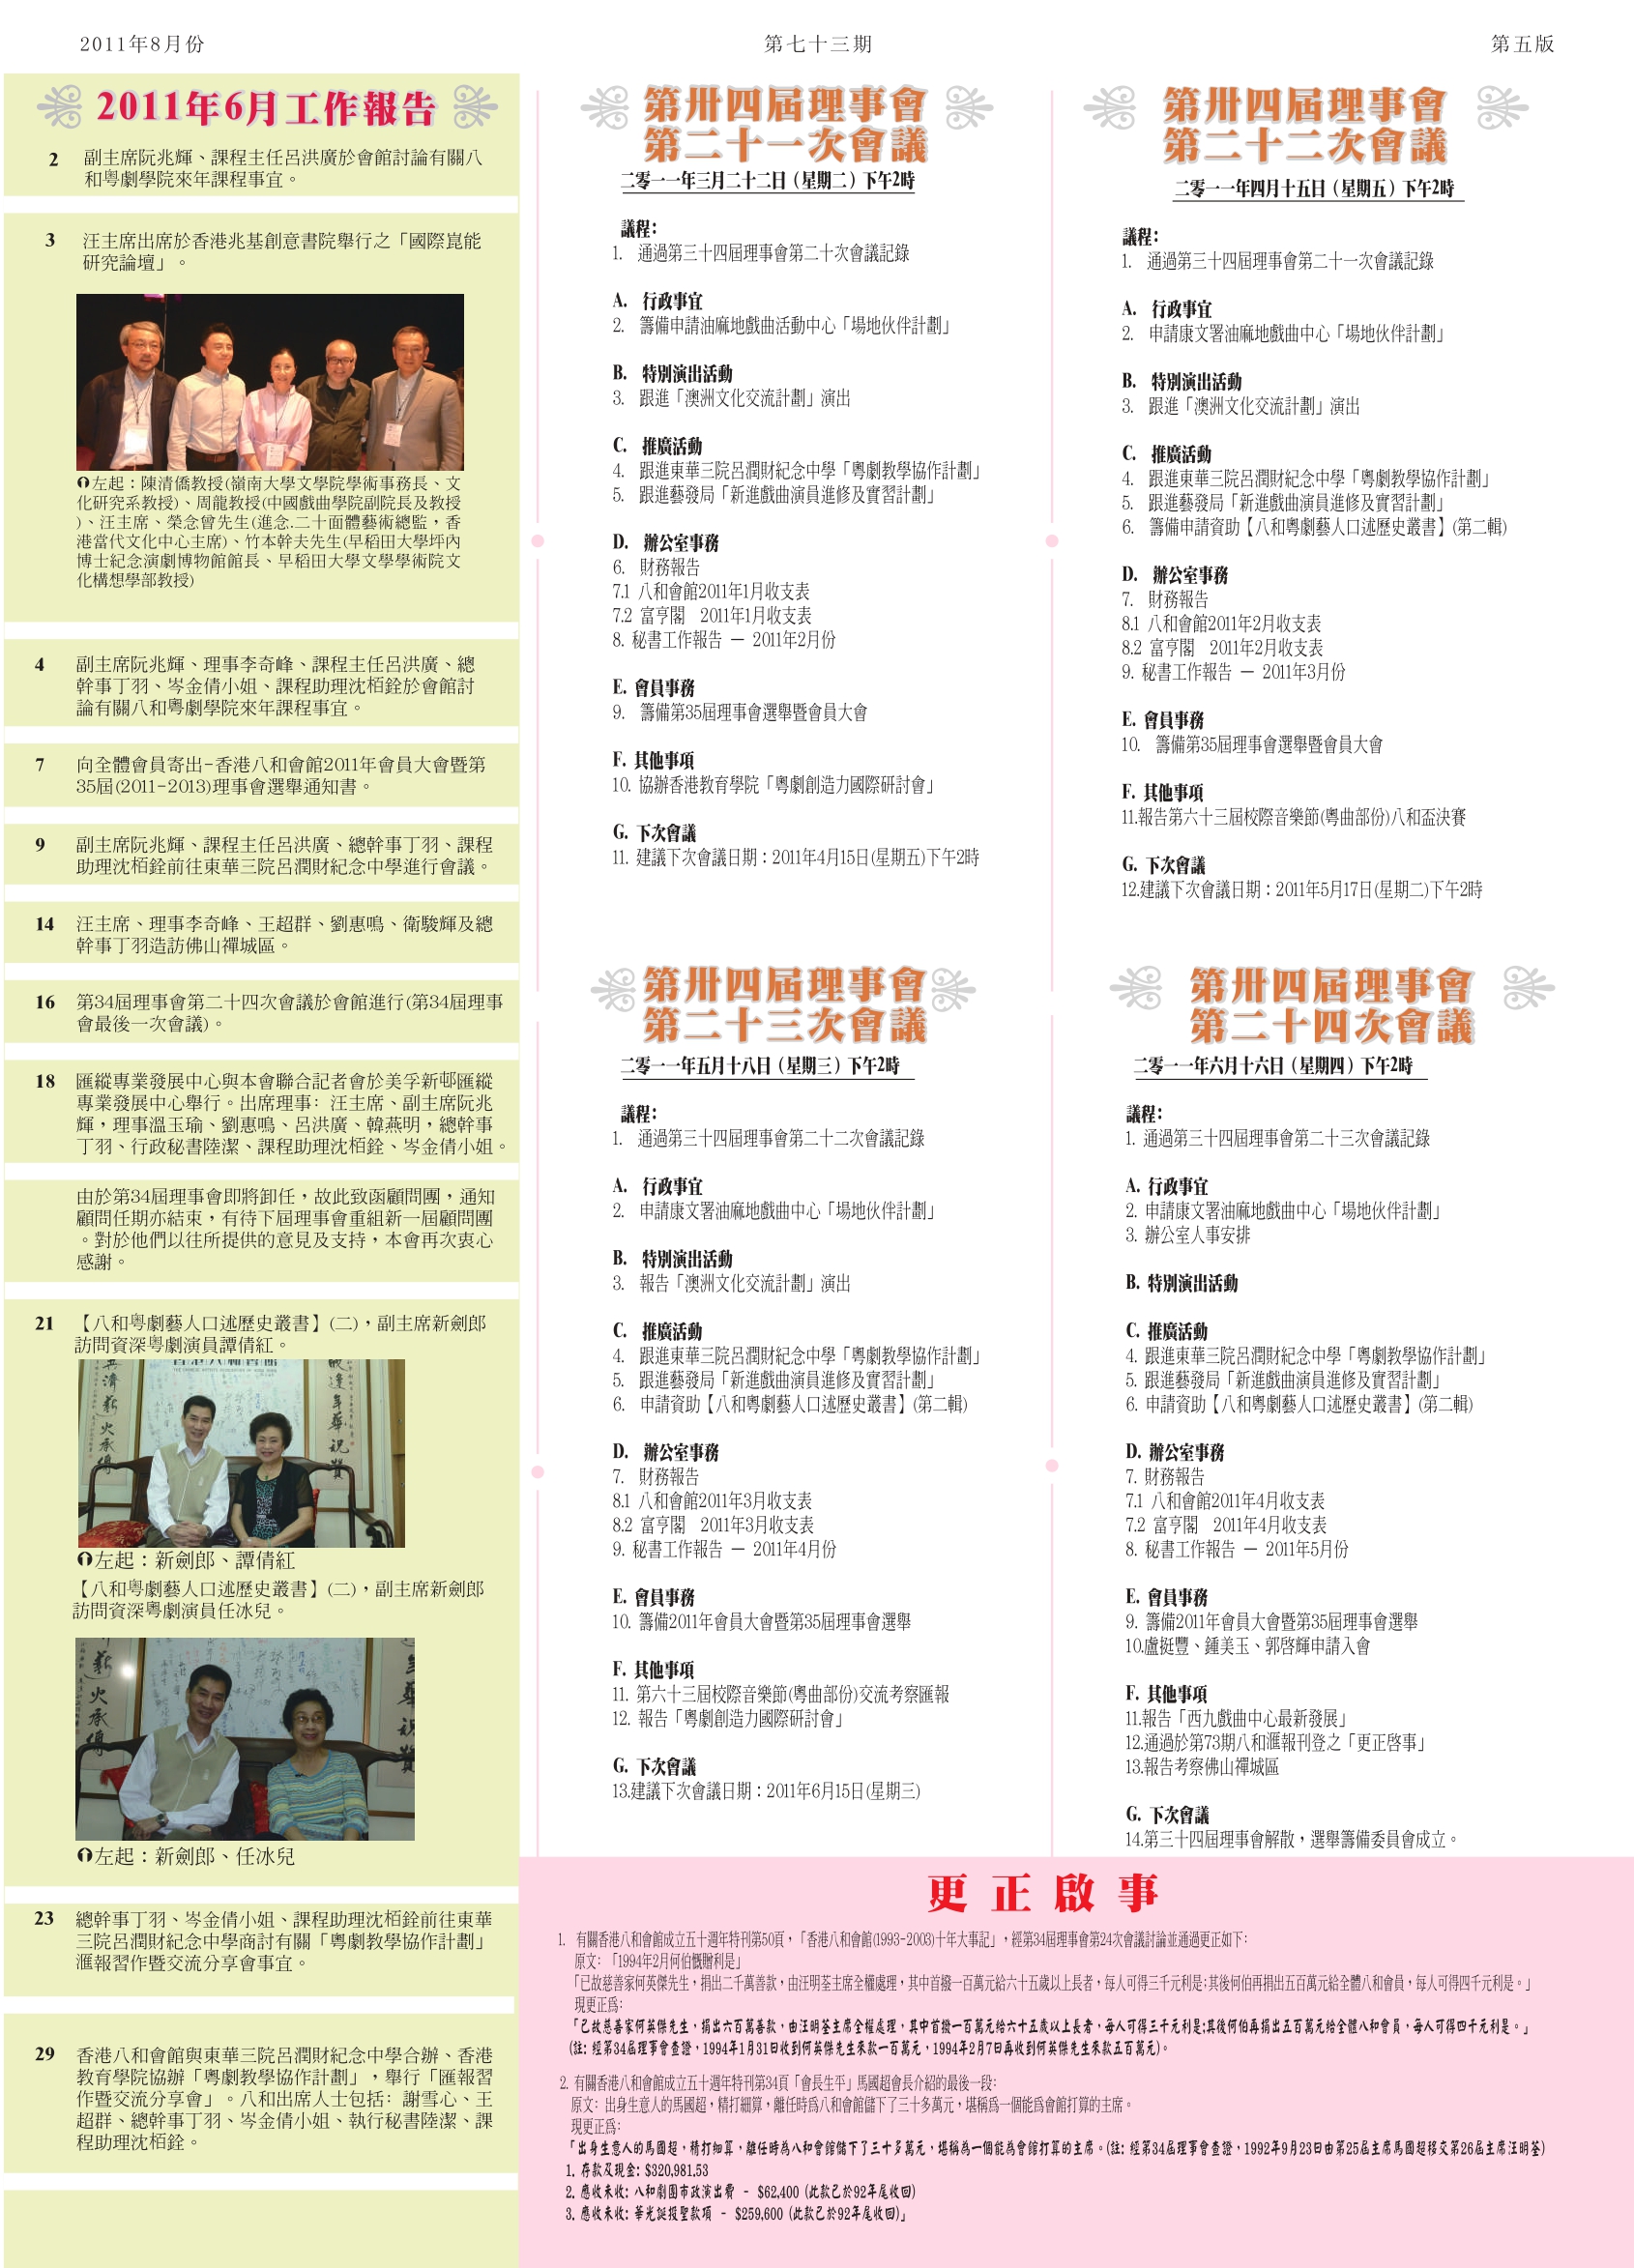 香港八和會館辦公室報告（2011年6月）及第三十四屆理事會第二十一至第二十四次會議議程